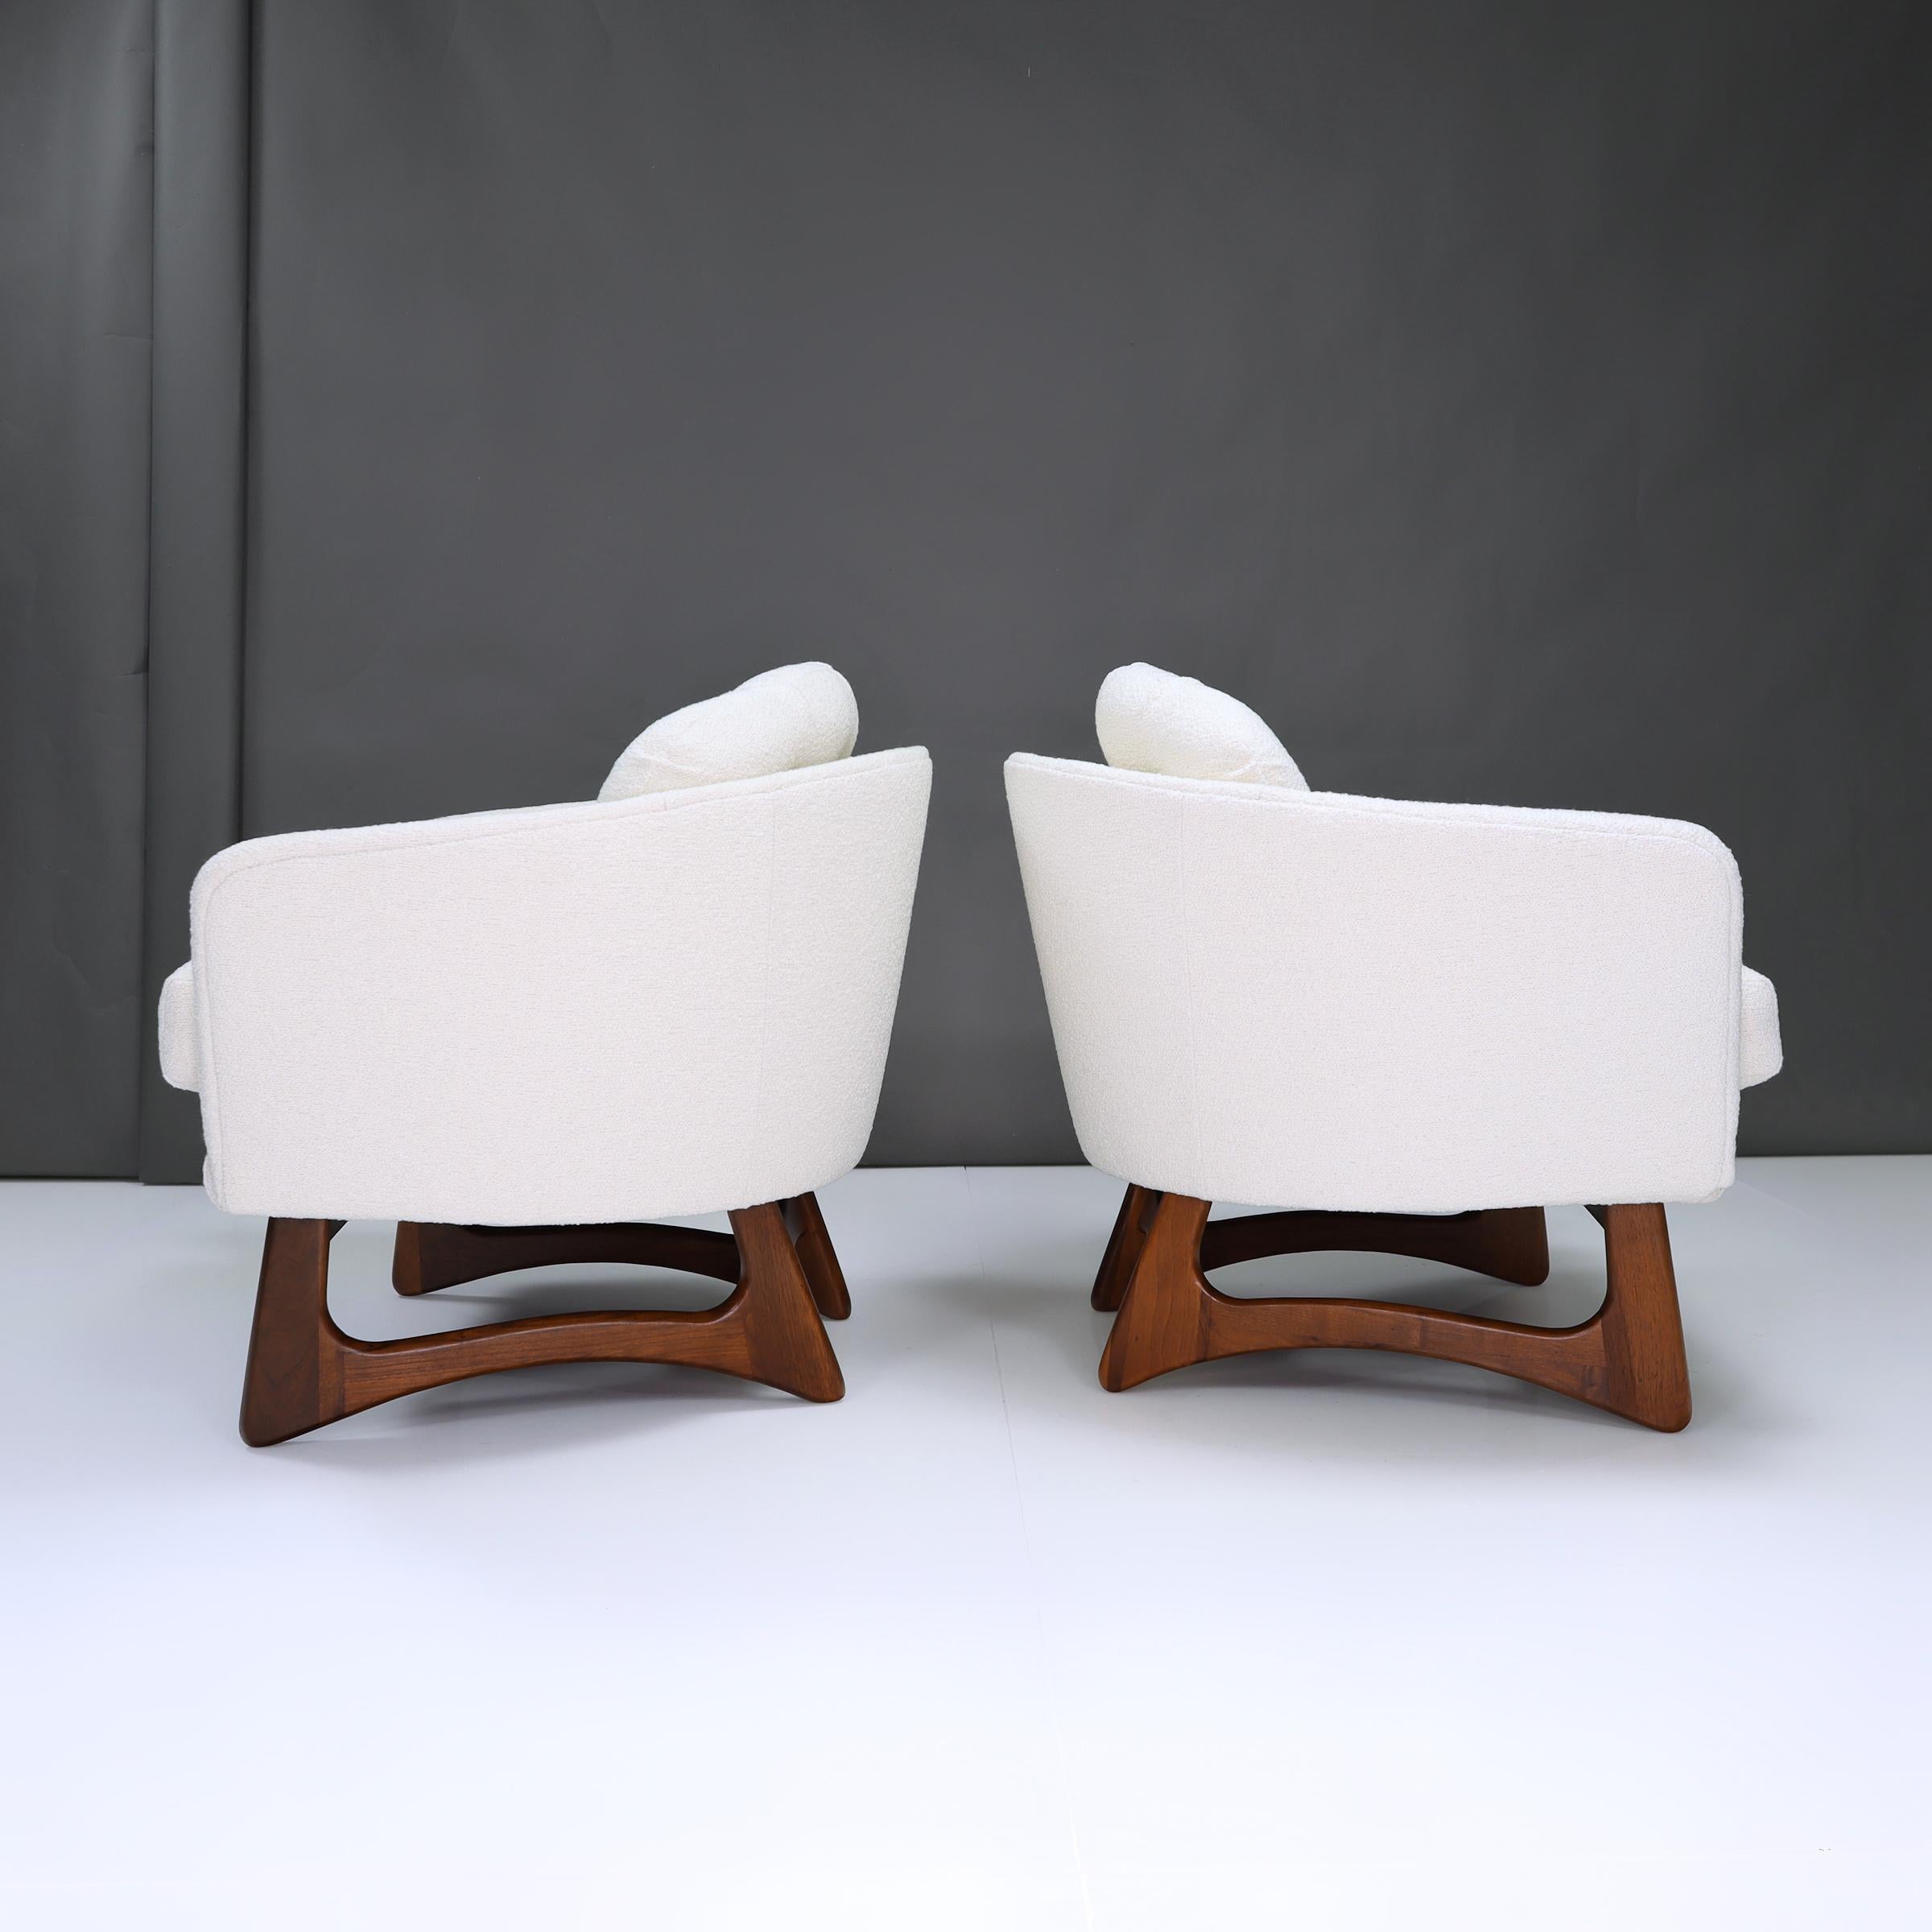 Entrez dans le summum du confort moderne avec ces chaises longues Adrian Pearsall Barrel Back, où la détente rencontre le style en toute transparence.

Ces pièces exquises offrent un havre de paix semblable à celui d'un nuage élégant et